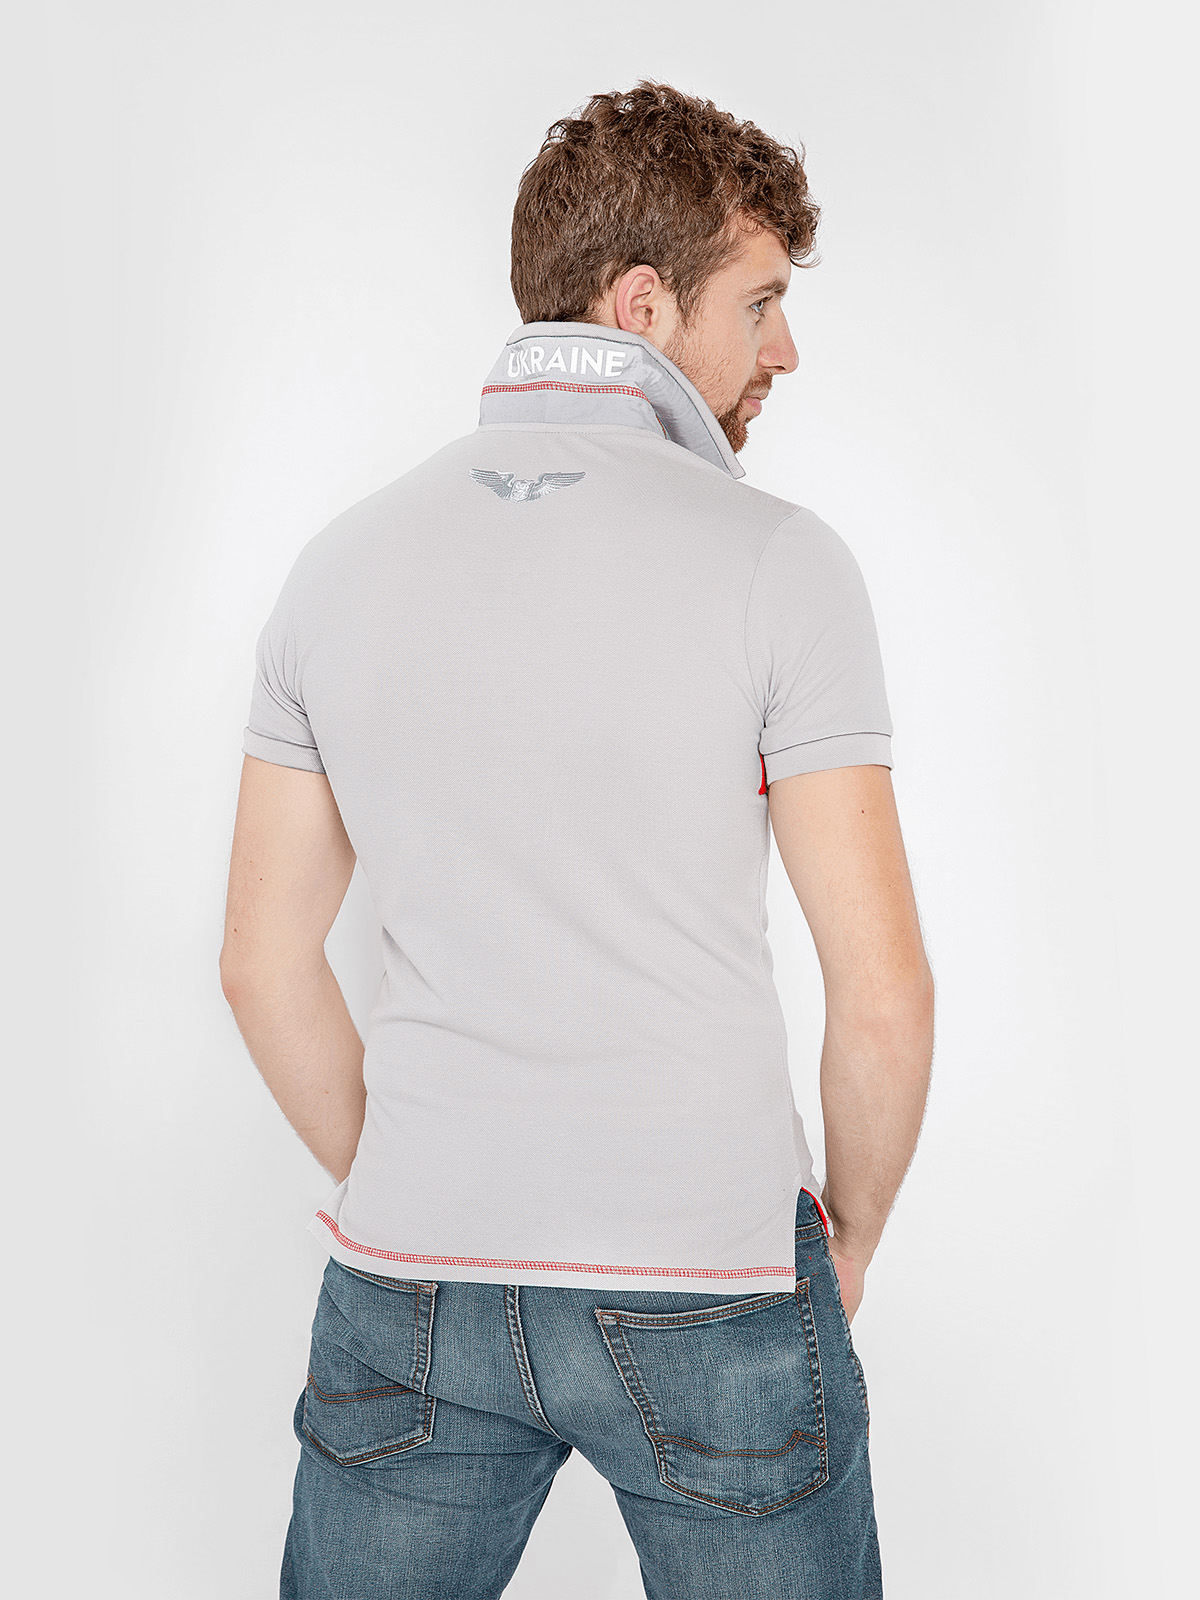 Men's Polo Shirt Wings. Color light-gray. 
Pique fabric: 100% cotton.